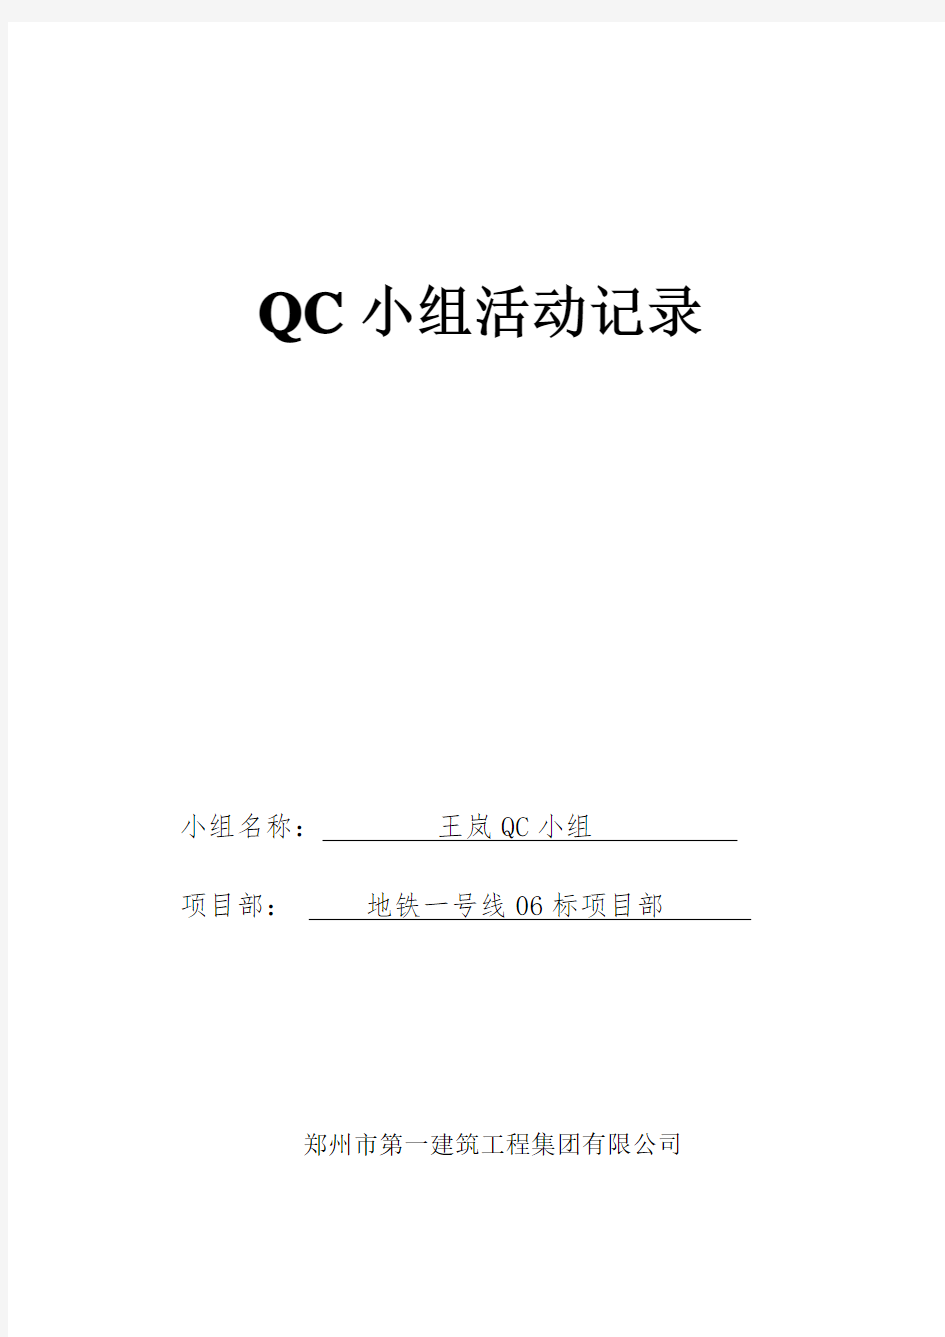 QC小组活动记录表1